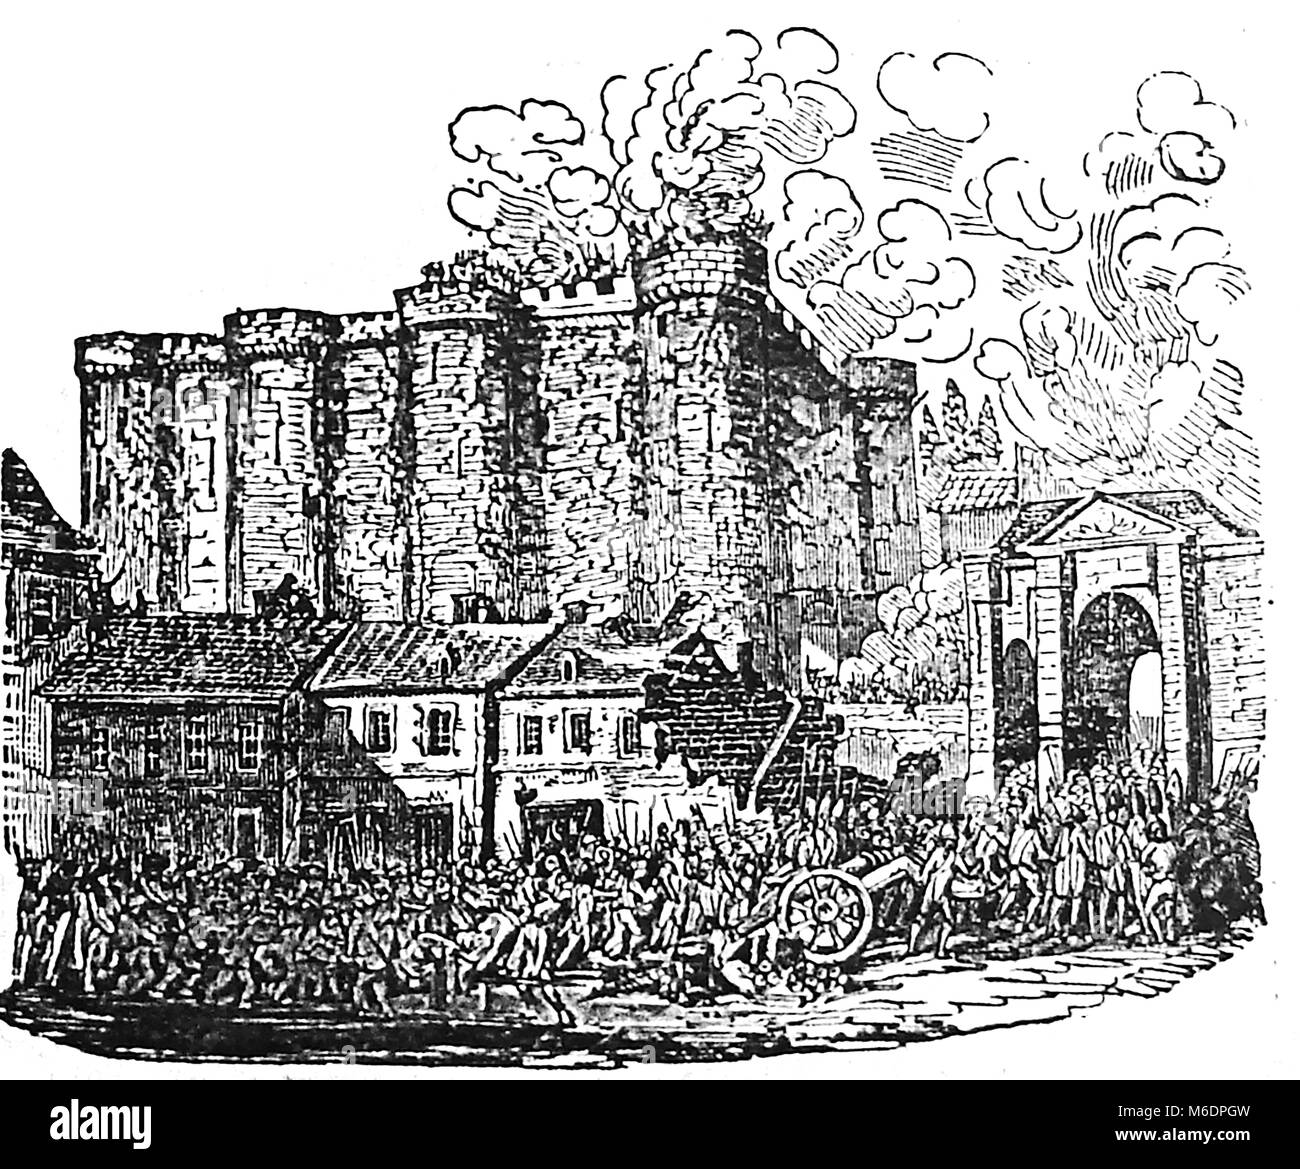 Prise de la Bastille, (prise de la bastille) Paris, France - 14 juillet 1789 Banque D'Images